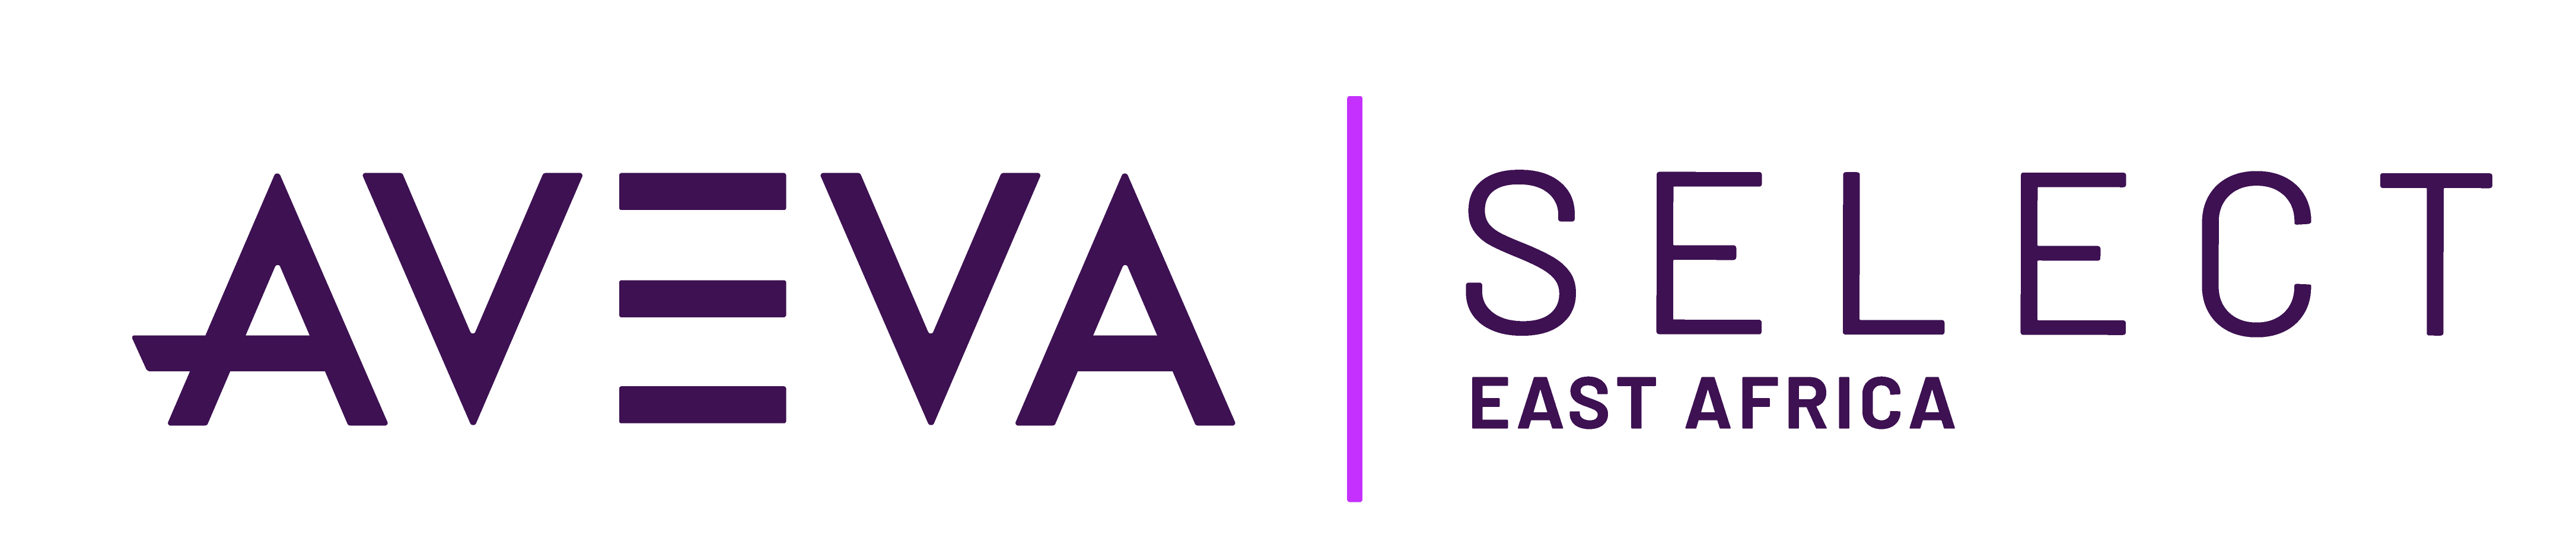 AVEVA Select East Africa